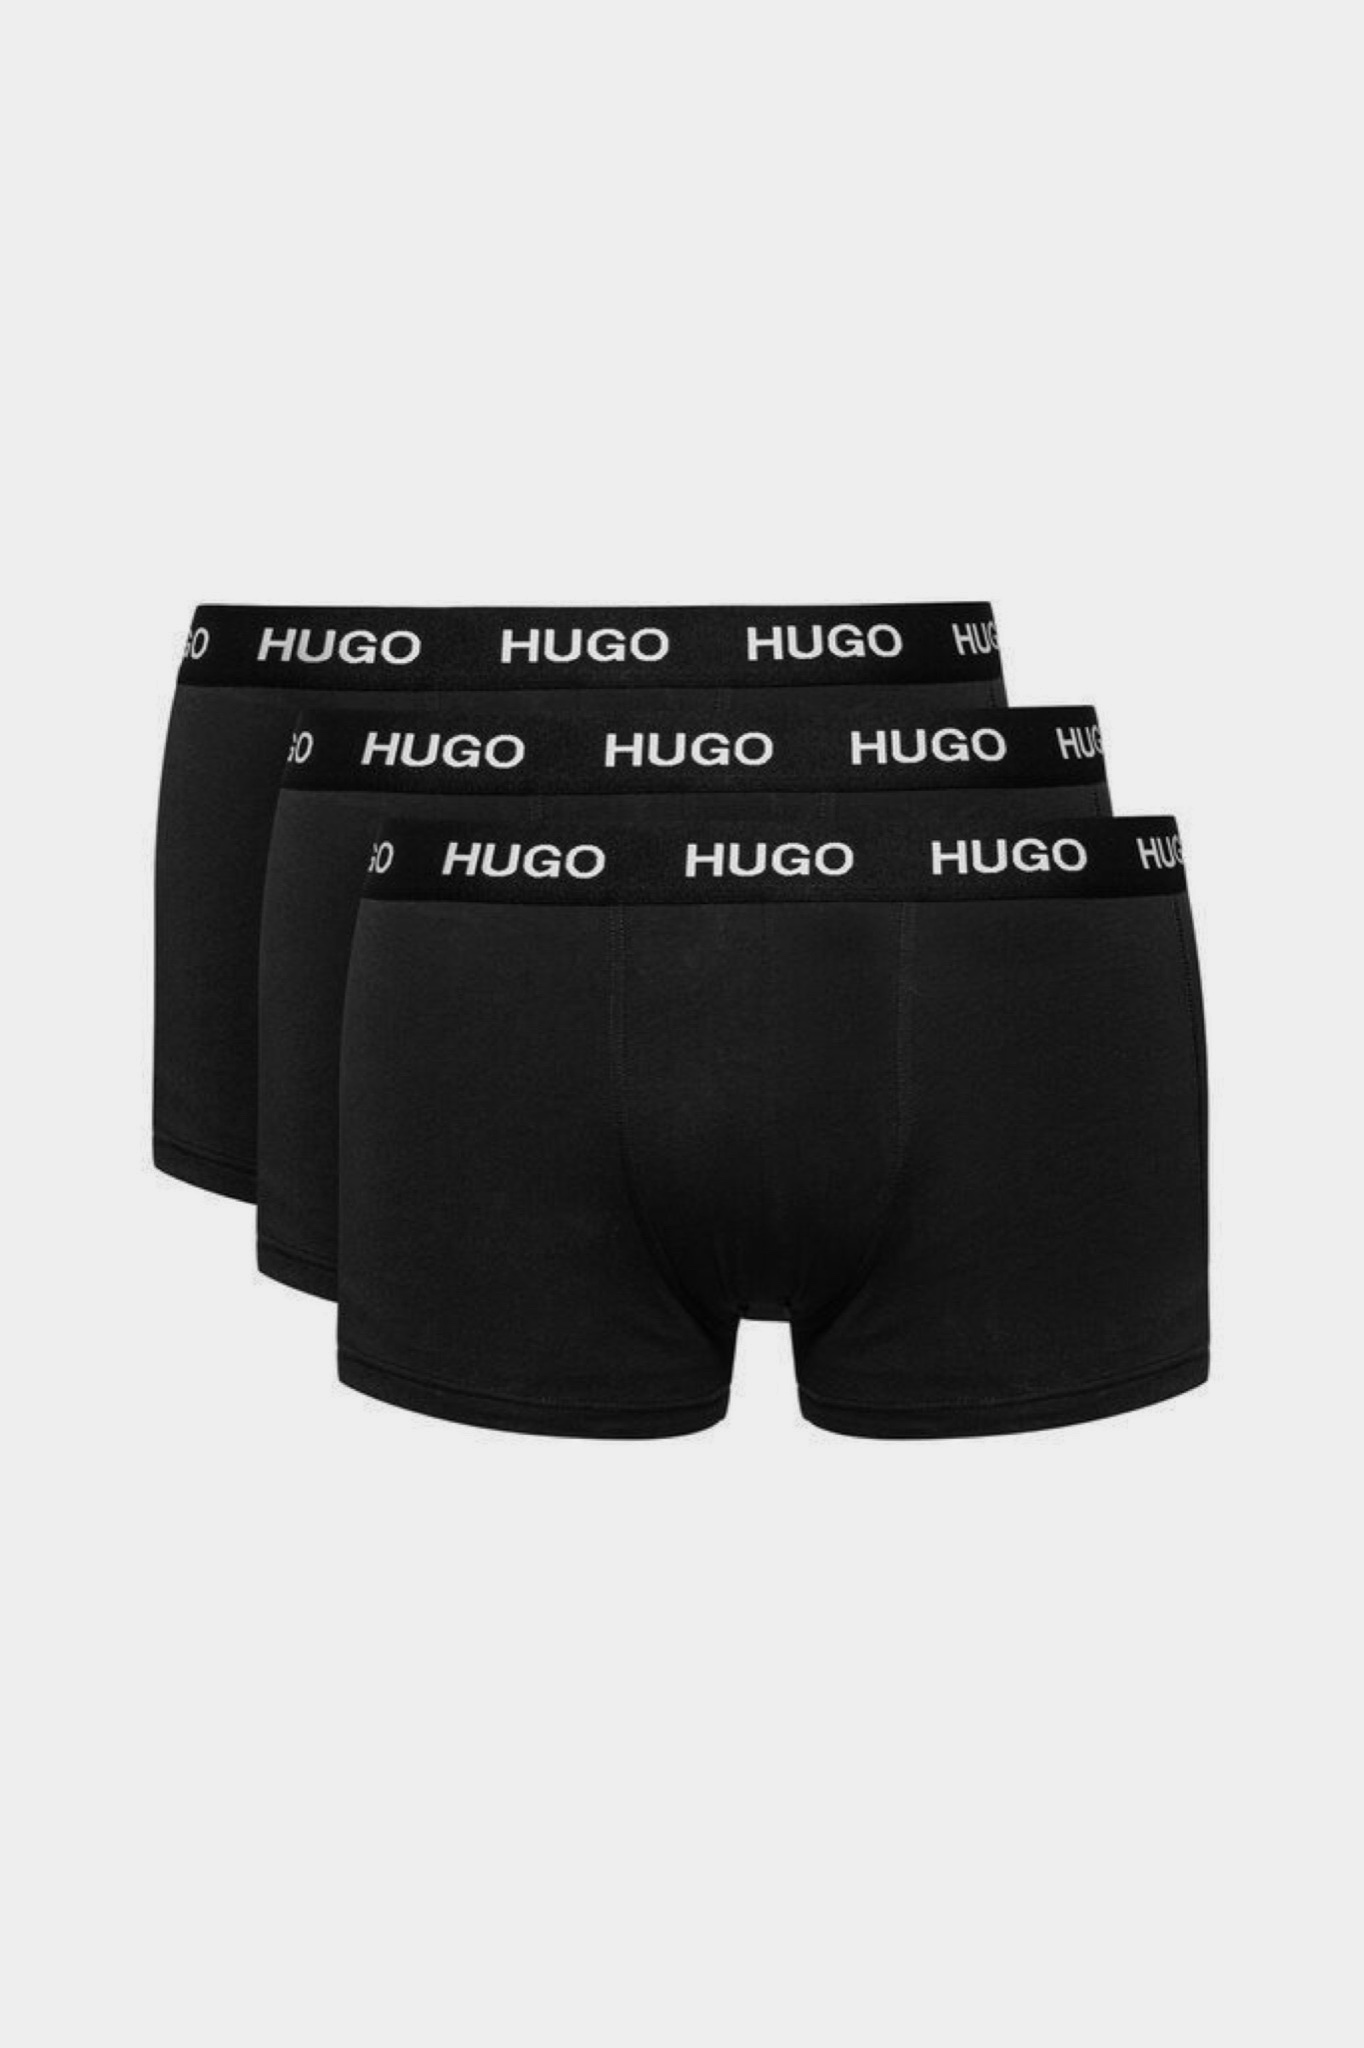 Чёрные боксерки HUGO